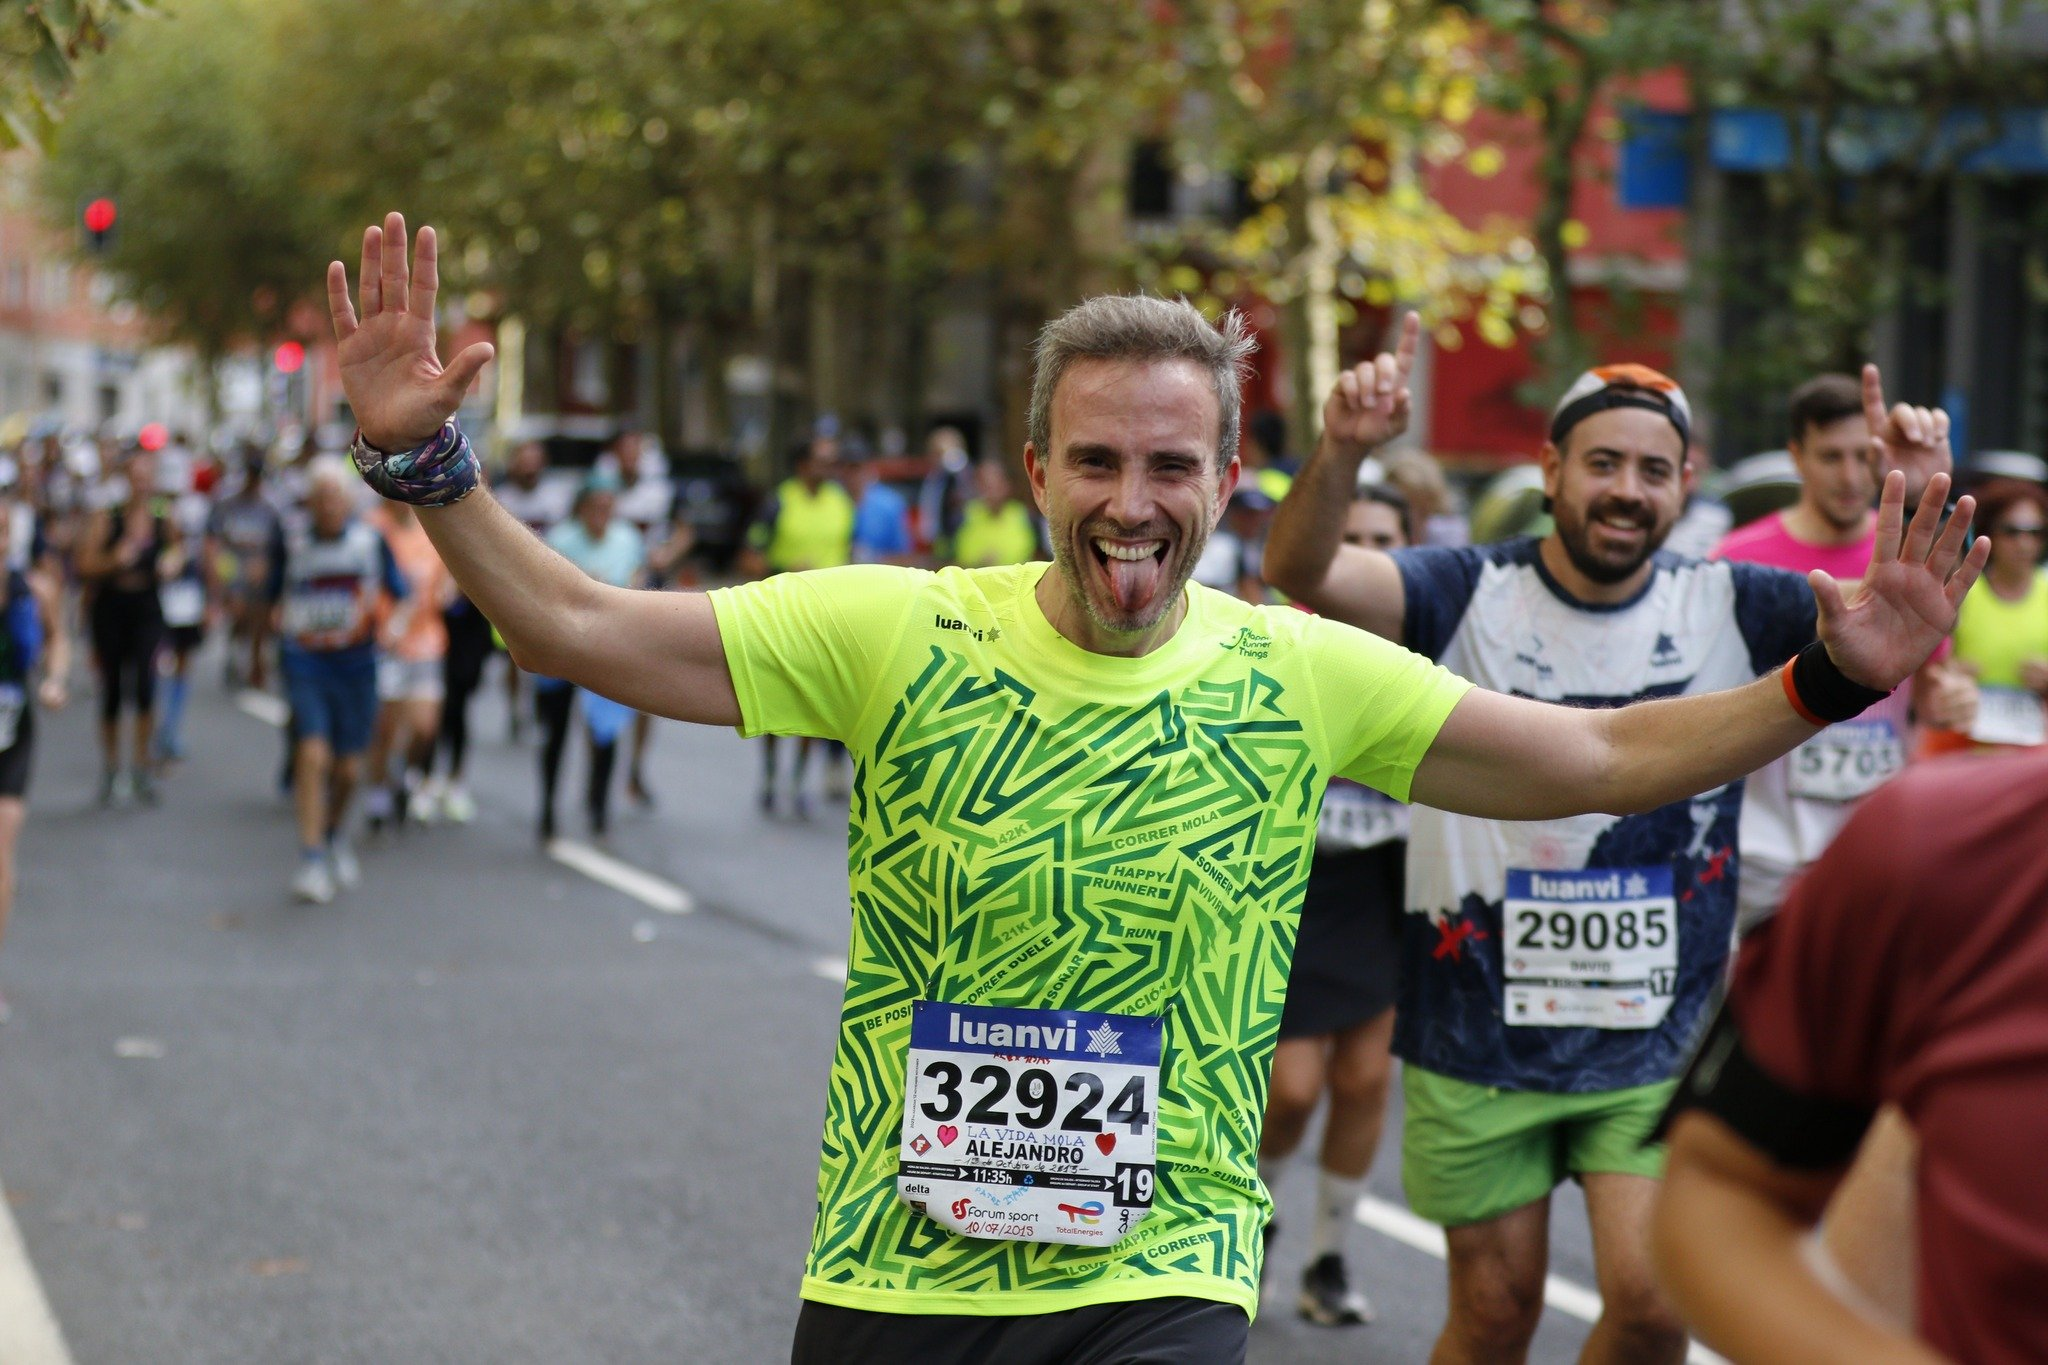 Descubriendo la Pasión por el Running: Cómo Correr una Carrera Puede Transformar tu Perspectiva